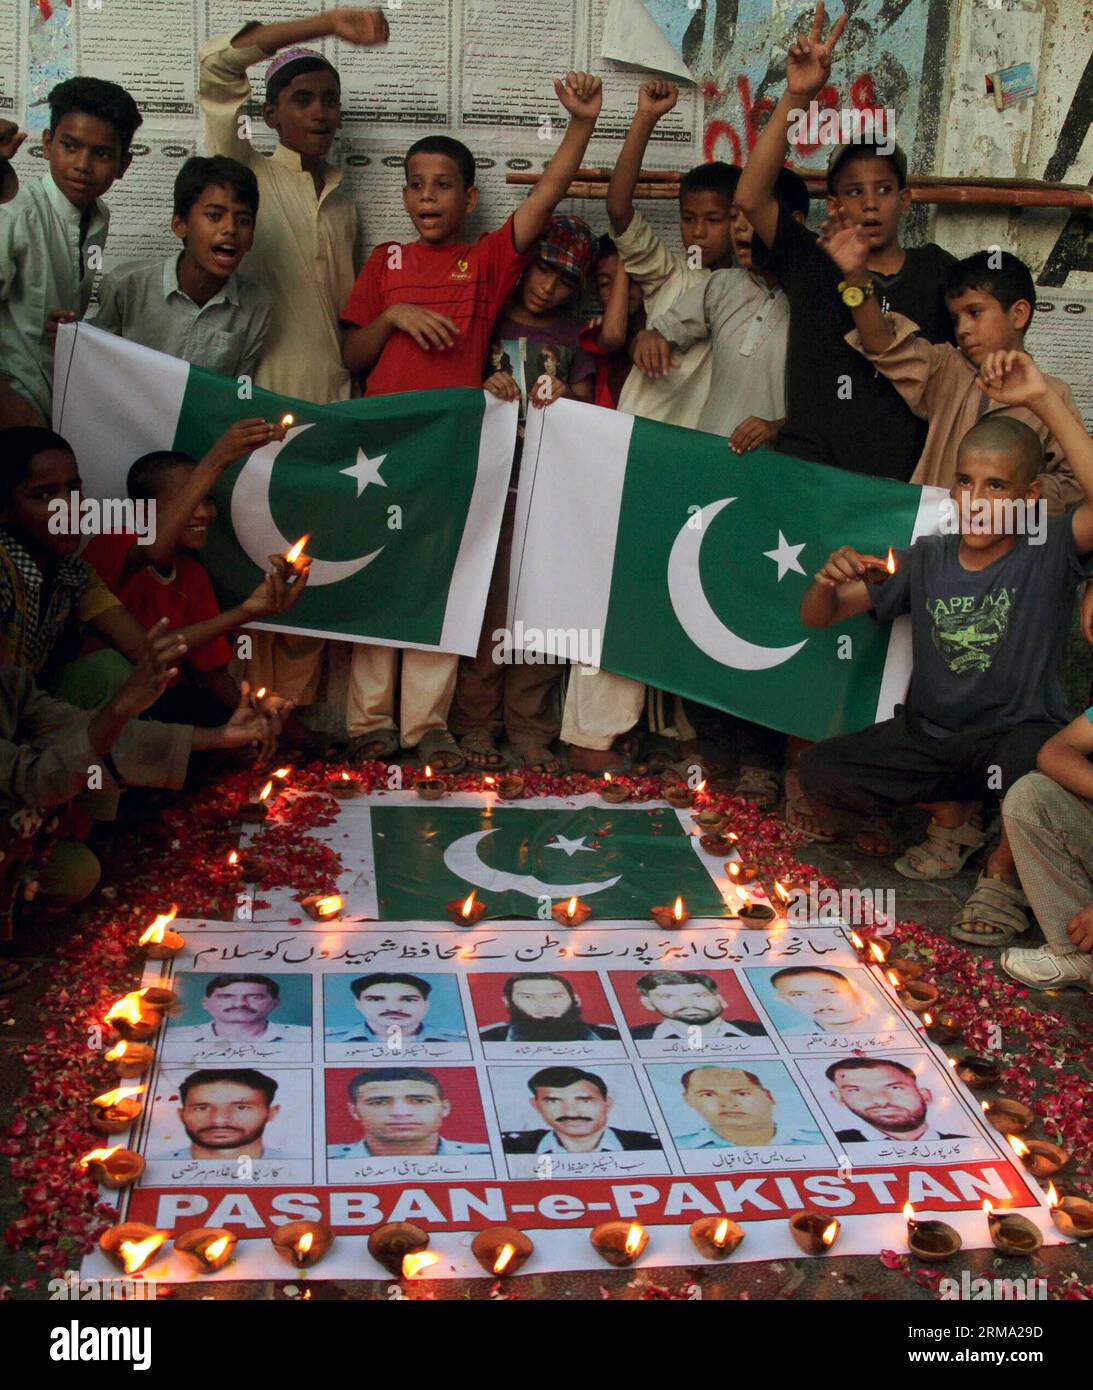 (140611) -- KARACHI, 11 juin 2014 (Xinhua) -- des Pakistanais se sont rassemblés autour de photos de responsables de la sécurité qui ont donné leur vie lors d'une attaque de militants contre l'aéroport de Karachi lors d'une cérémonie de veillée dans la ville portuaire de Karachi, dans le sud du Pakistan, le 11 juin 2014. Au moins 38 personnes, dont 10 militants, ont été tuées dans l'attaque de l'aéroport international Jinnah de Karachi tard dimanche soir. (Xinhua/Arshad) (cy) PAKISTAN-KARACHI-ATTACK-MOUORNING PUBLICATIONxNOTxINxCHN Karachi juin 11 2014 des célébrités pakistanaises de XINHUA se sont rassemblées autour de photos de responsables de la sécurité qui ont donné leur vie dans l'attaque militante O. Banque D'Images